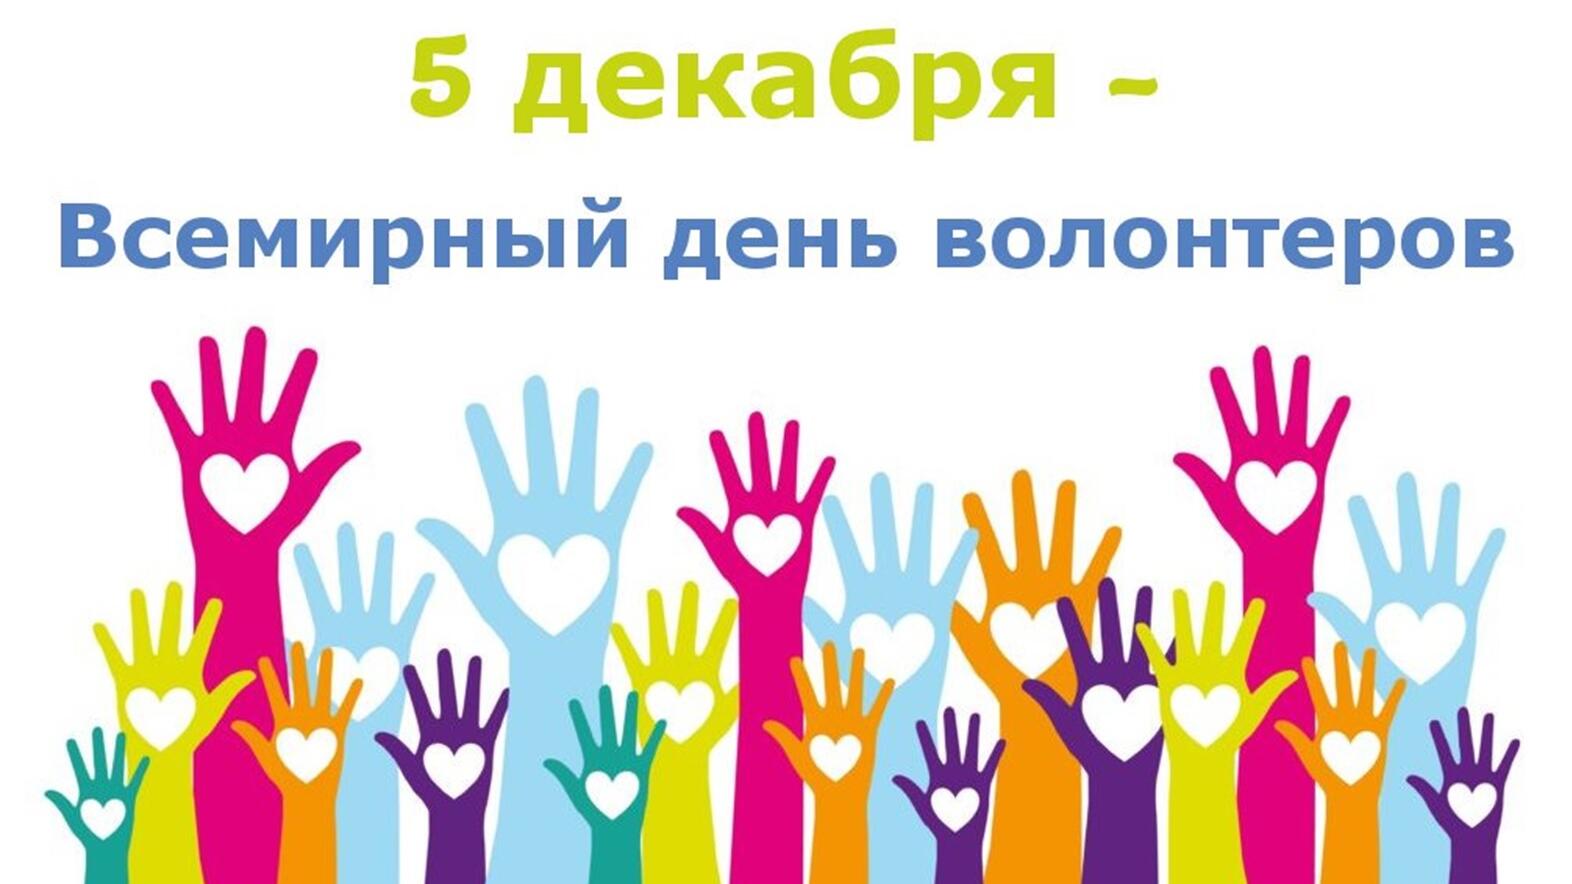 5 декабря — День добровольца (волонтера) в России